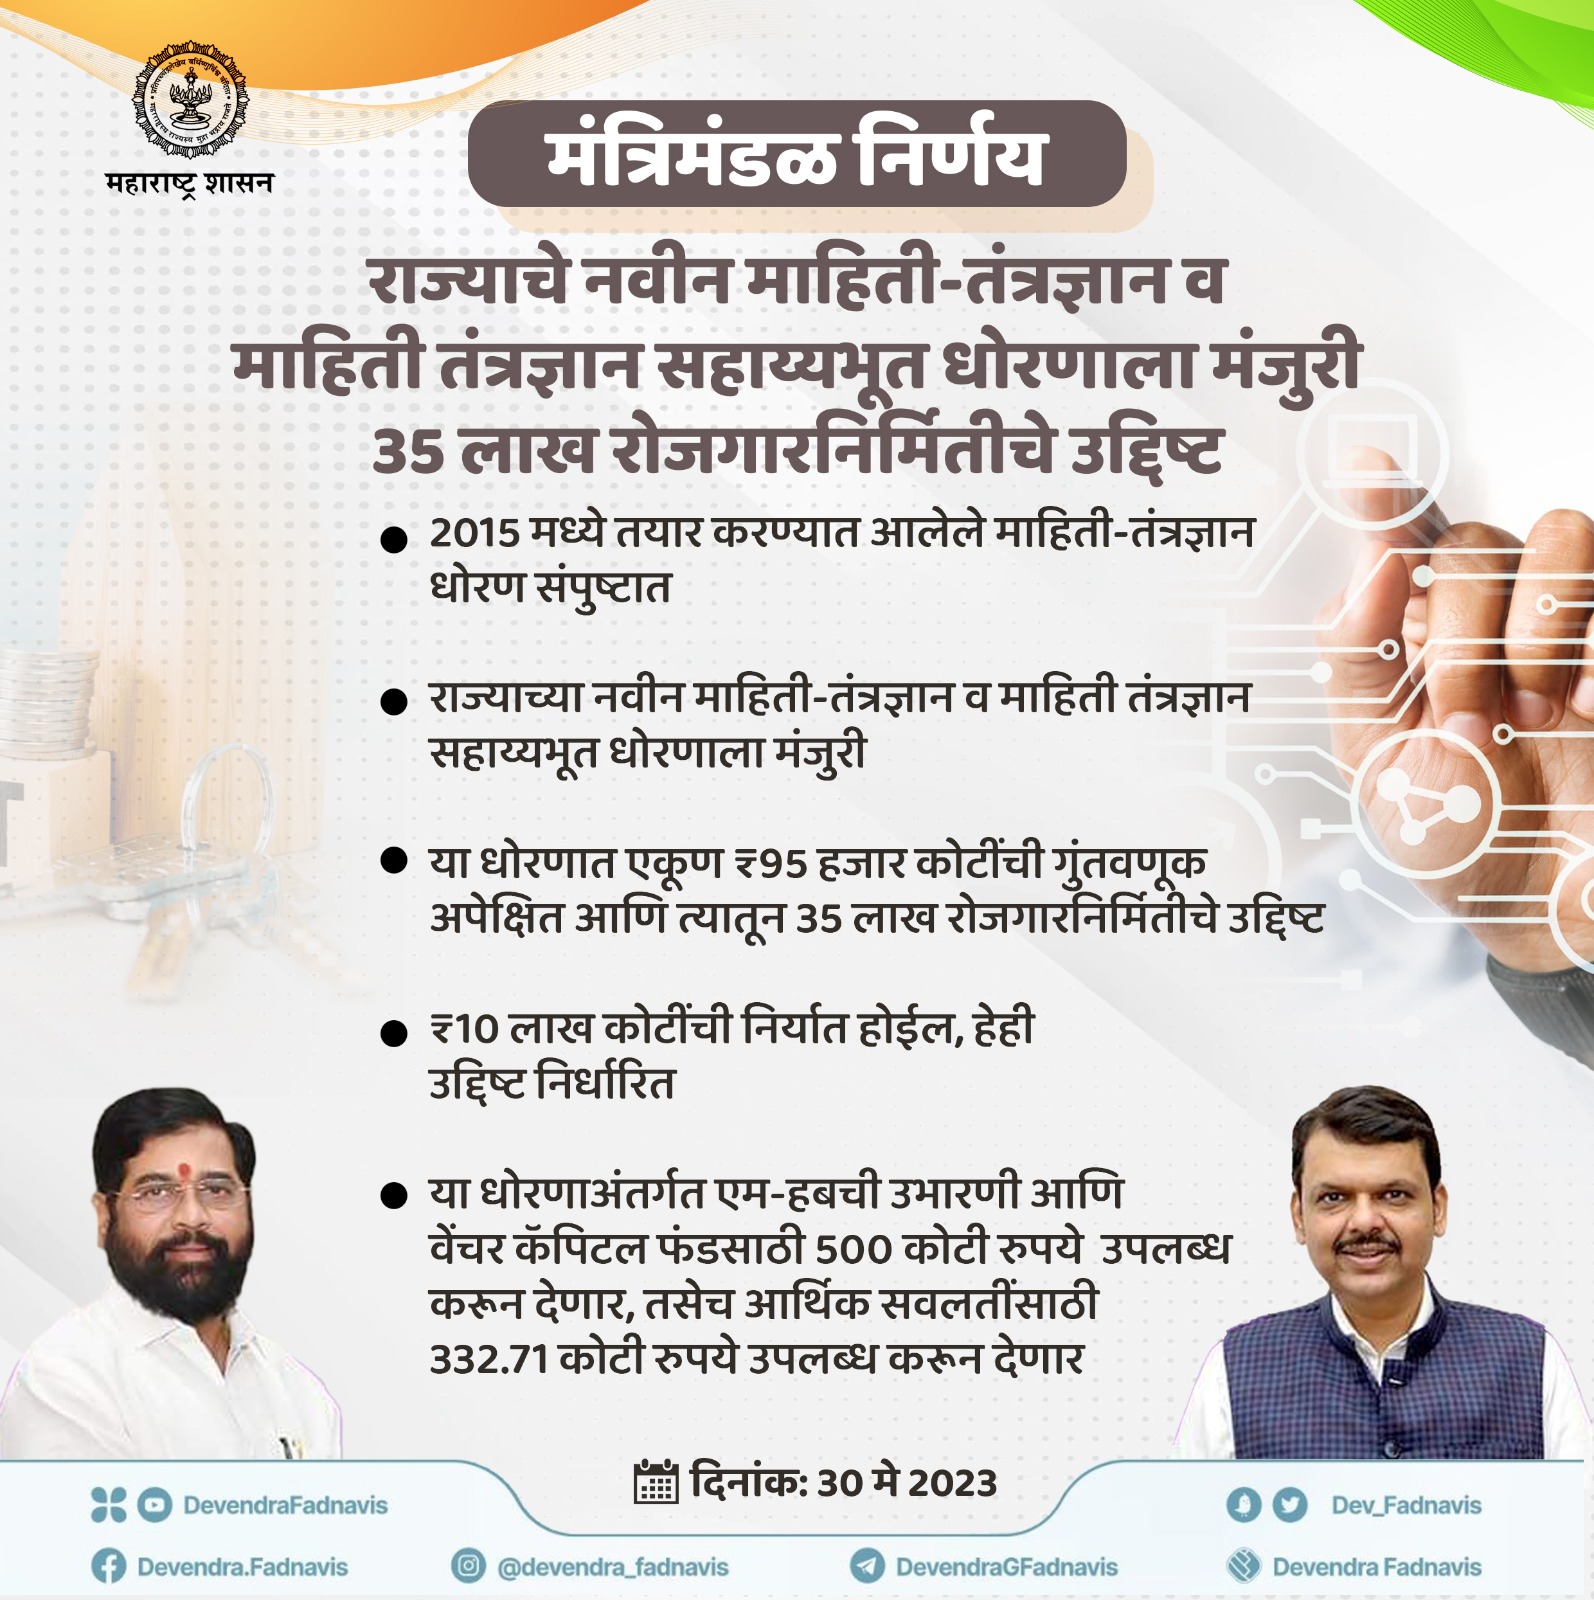 राज्याचे नवीन माहिती-तंत्रज्ञान व माहिती तंत्रज्ञान सहाय्यभूत धोरणाला मंजुरी .35 लाख रोजगारनिर्मितीचे उद्दिष्ट #मंत्रिमंडळ_निर्णय #CabinetDecision #Maharashtra #ITpolicy #IT